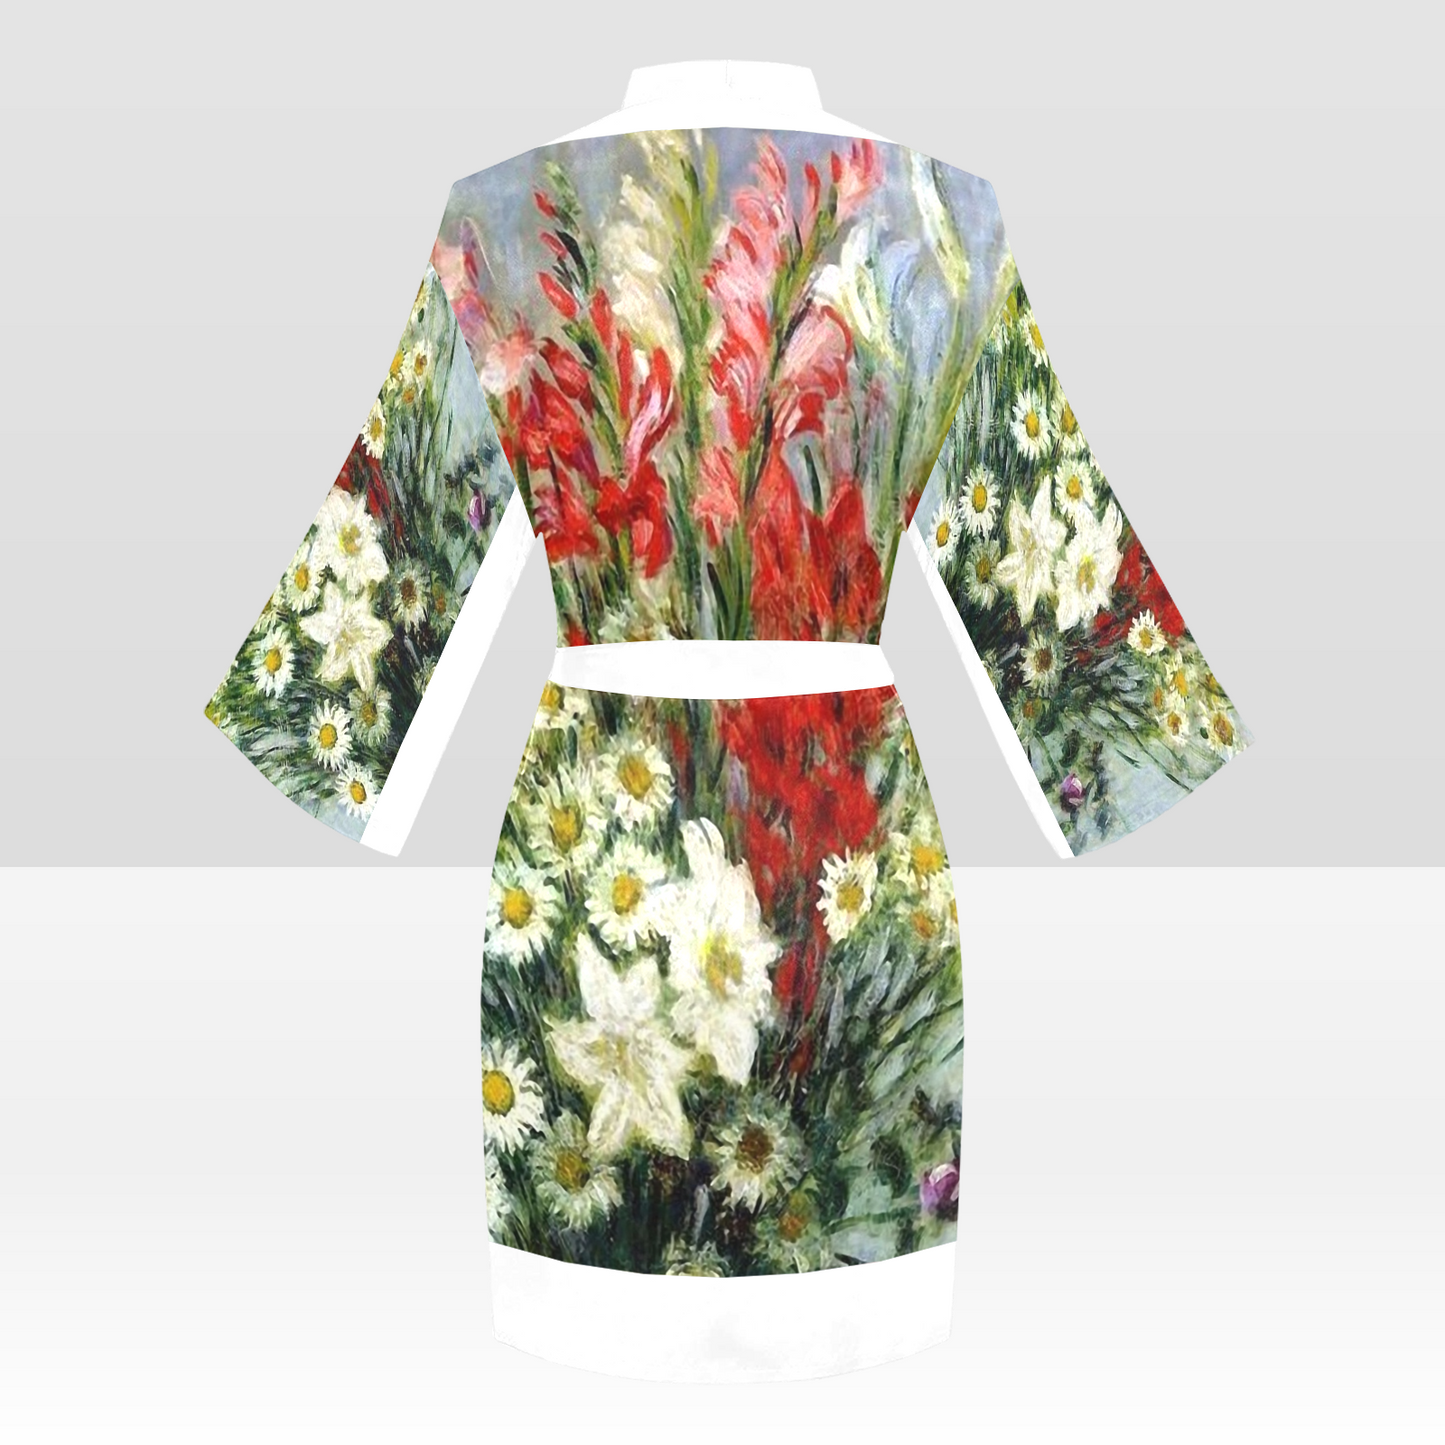 Vintage Floral Kimono Robe, Black or White Trim, Sizes XS to 2XL, Design 43